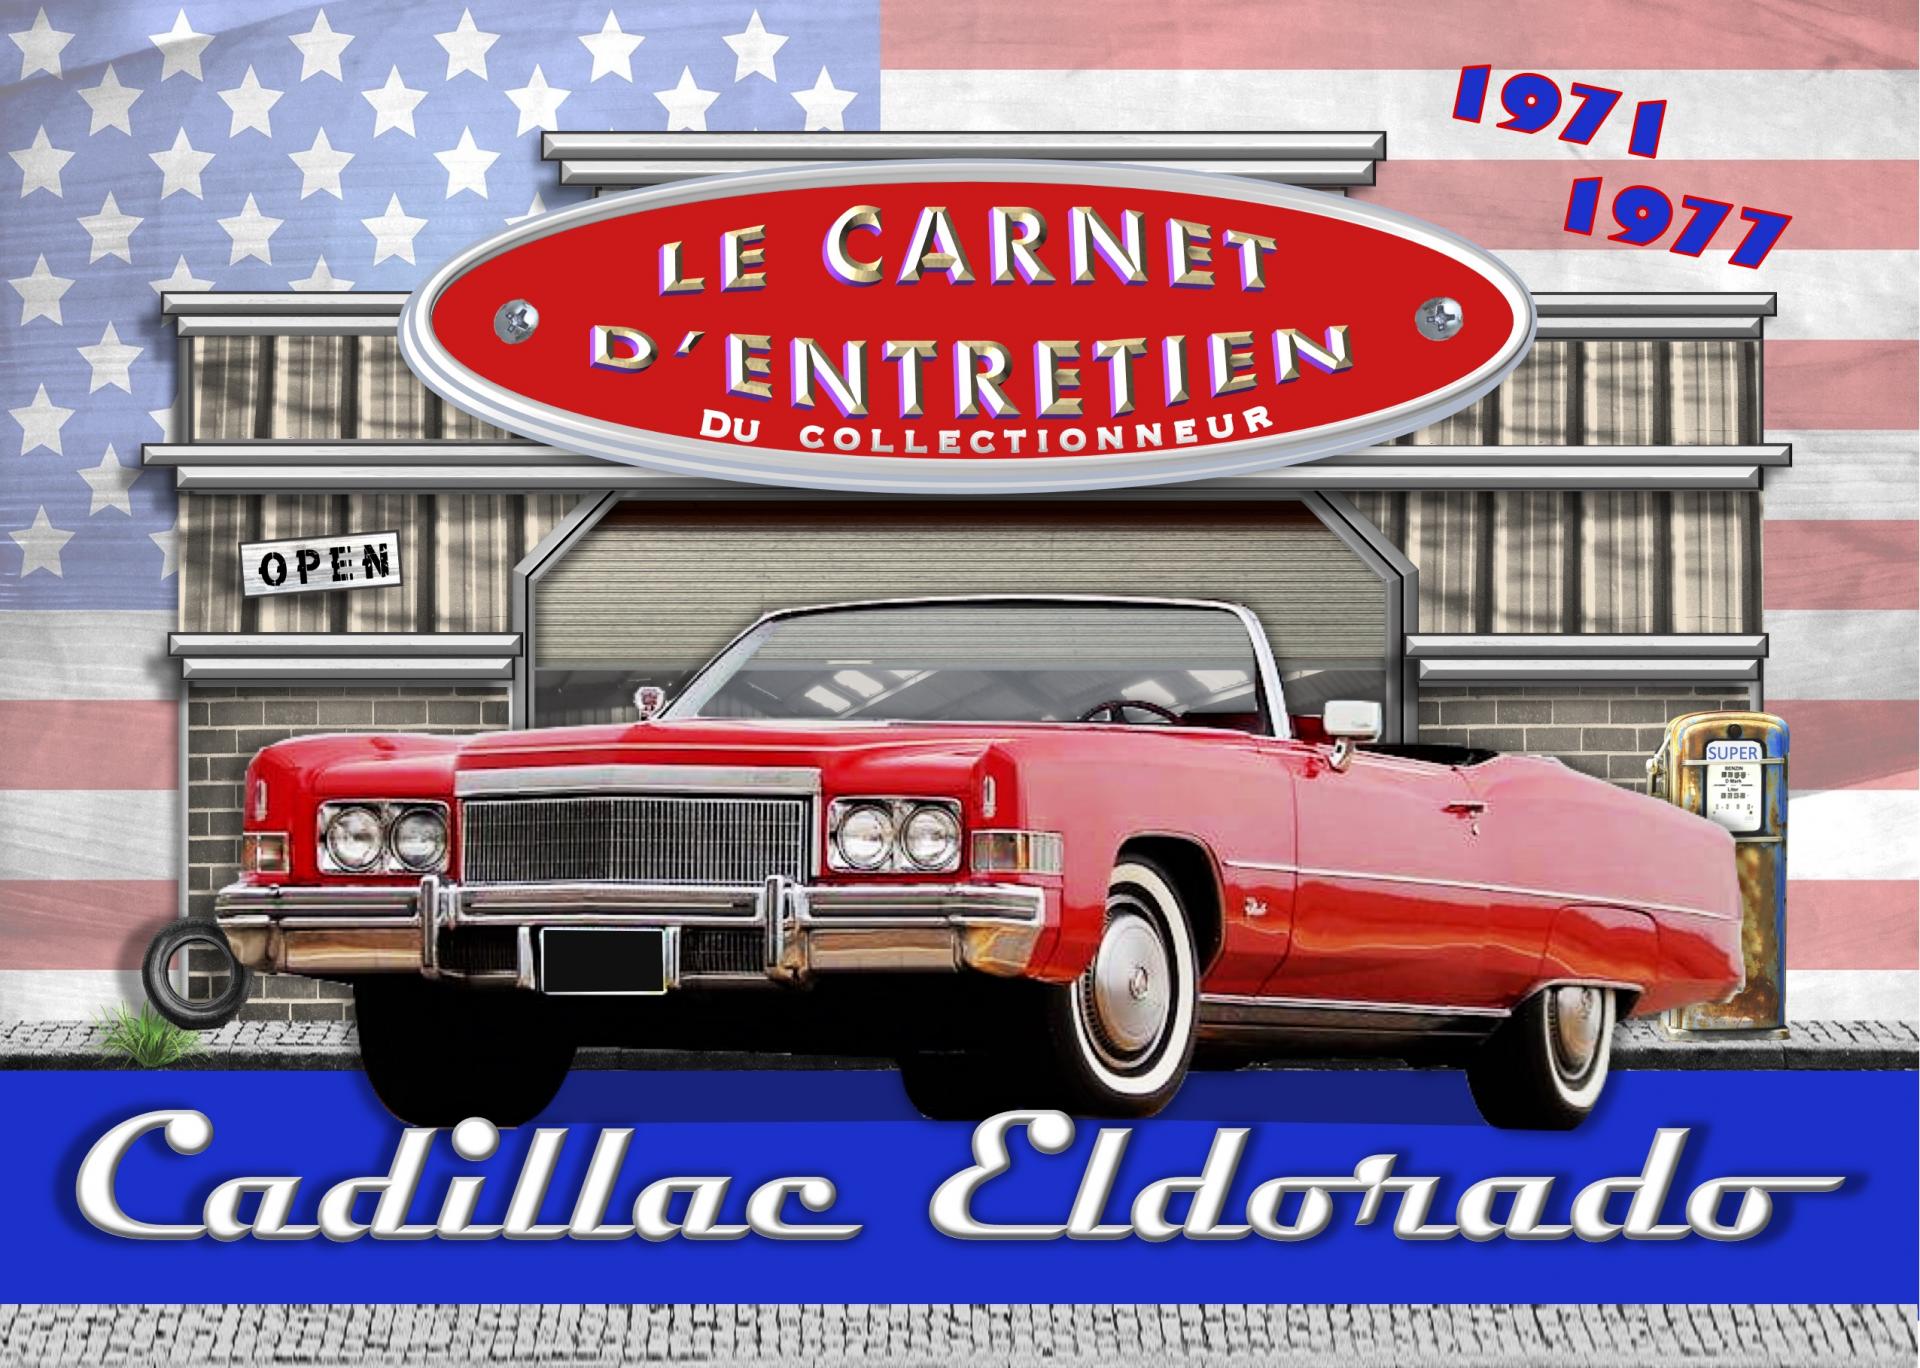 Cadillac eldorado 1